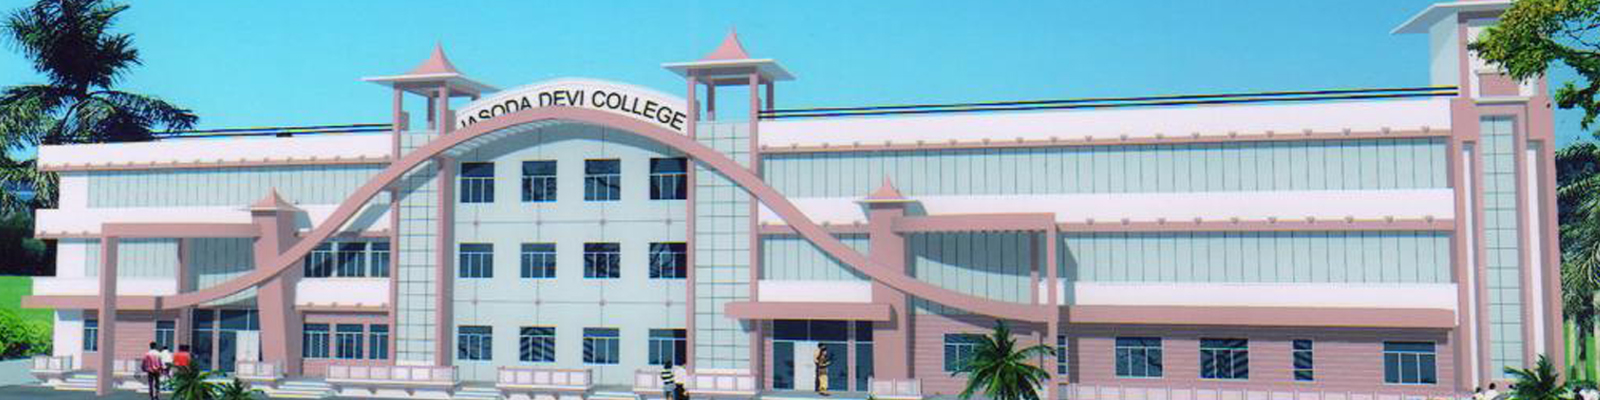 Jasoda Devi Colleges and Institutions, Jaipur Image